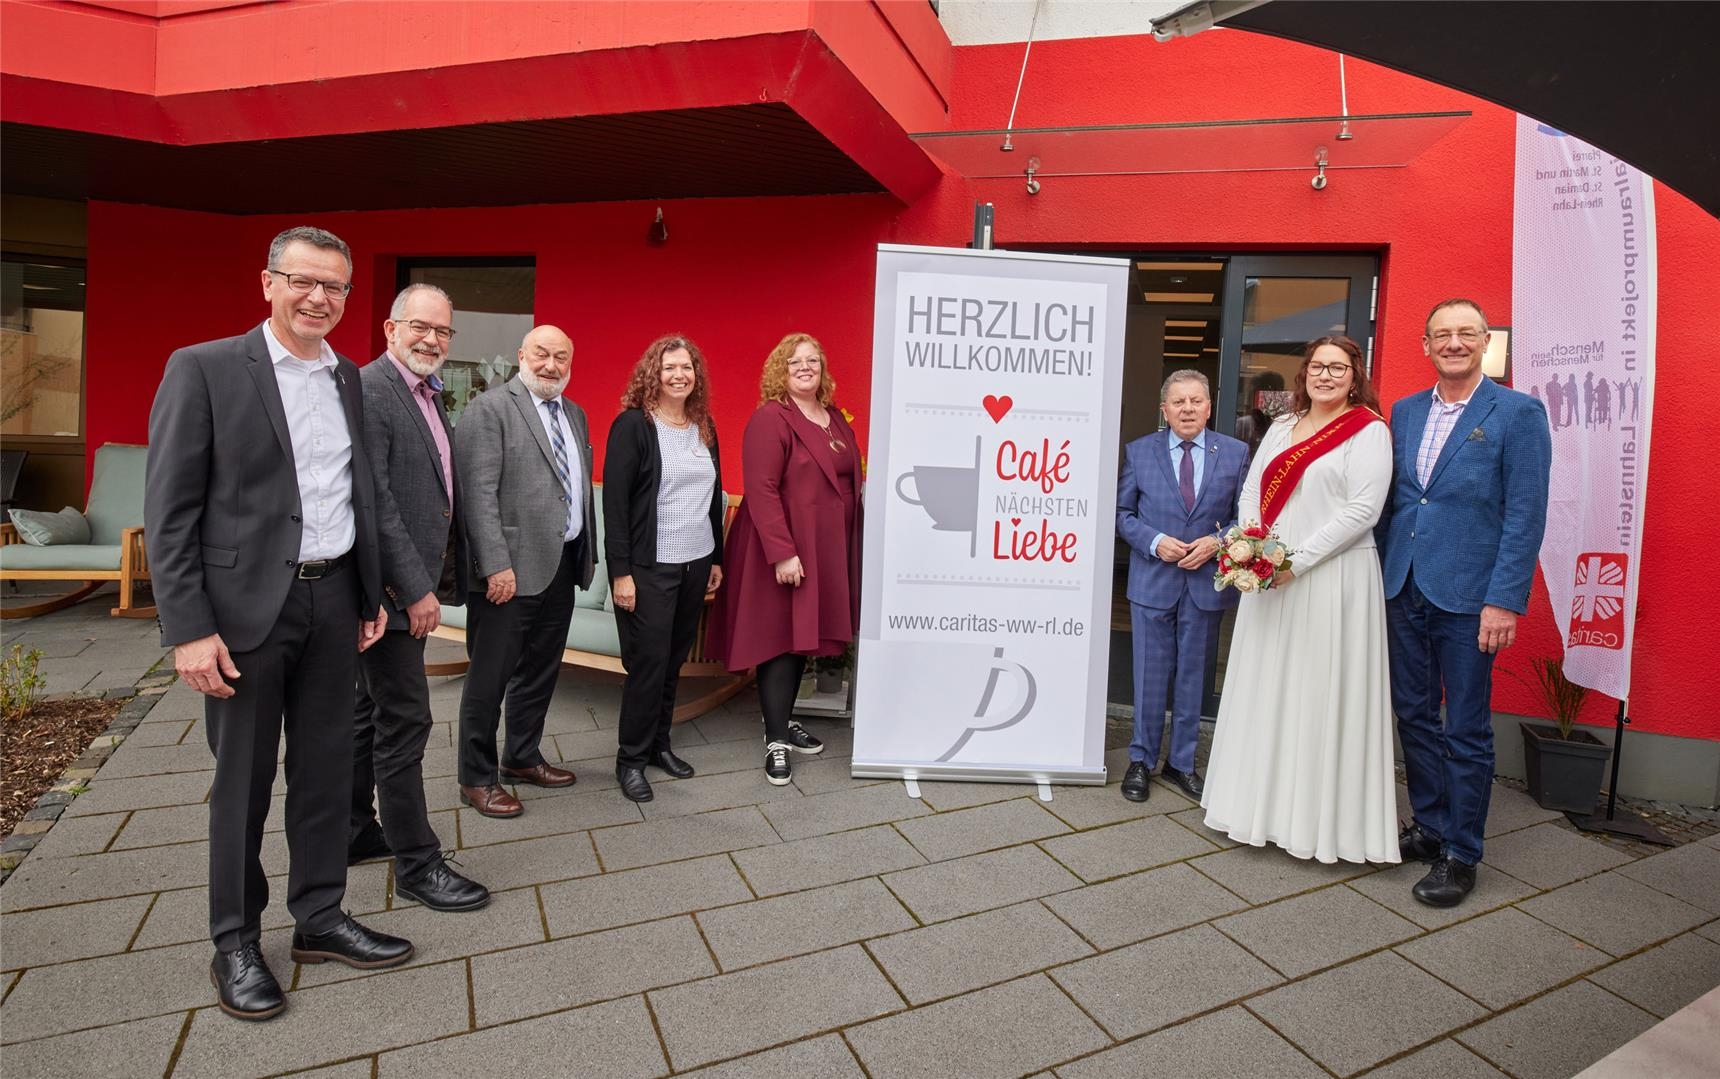 Die Caritas-Verantwortlichen und Ehrengäste stehen um das Schild "Herzlich Willkommen im Café Nächstenliebe". (Caritasverband Westerwald-Rhein-Lahn e.V. / Olaf Nitz)